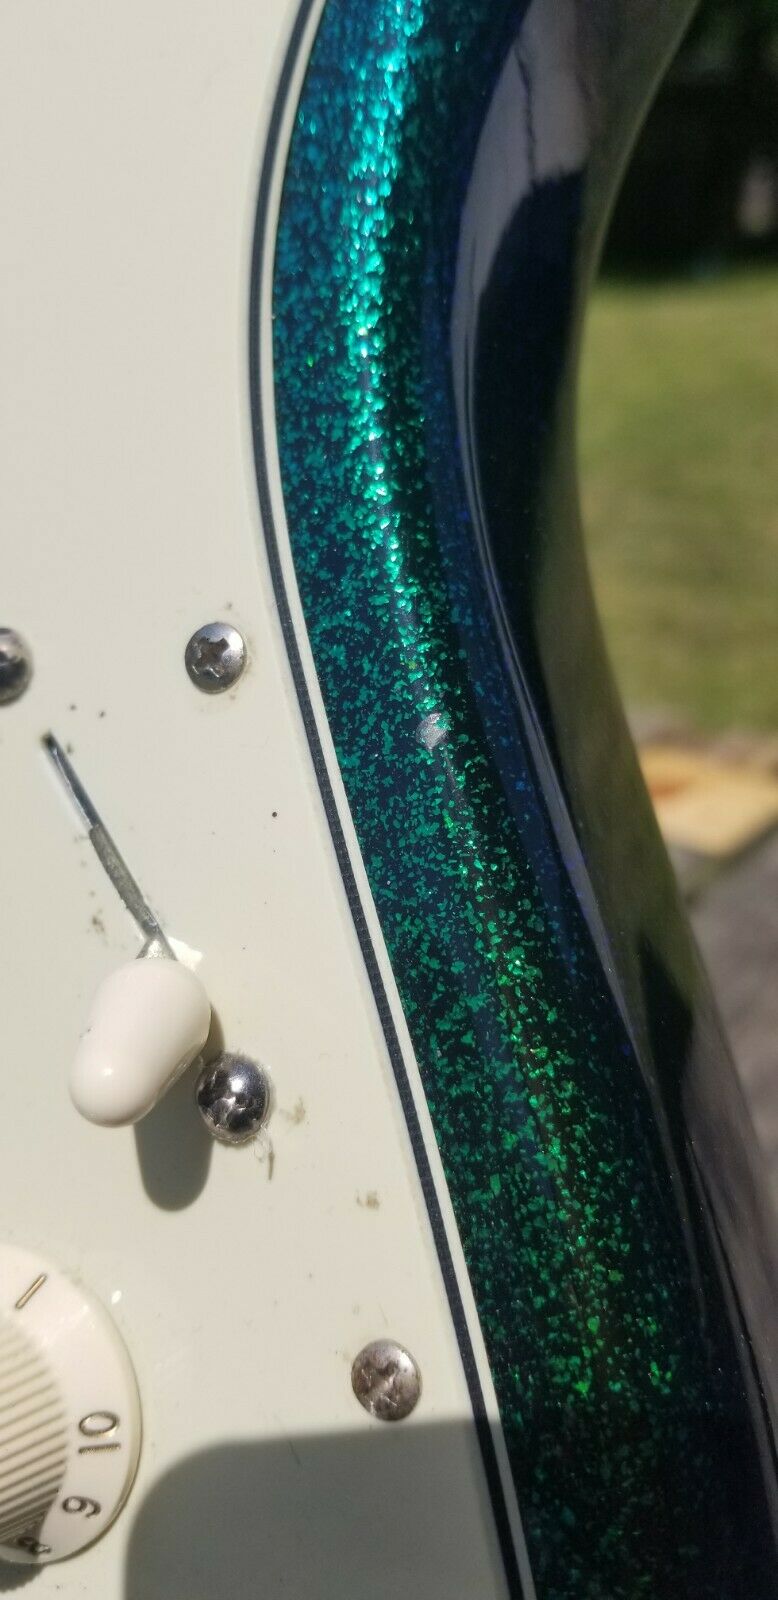 Limited Edition Flip Flop Green Blue Standard Stratocaster pickguar detail